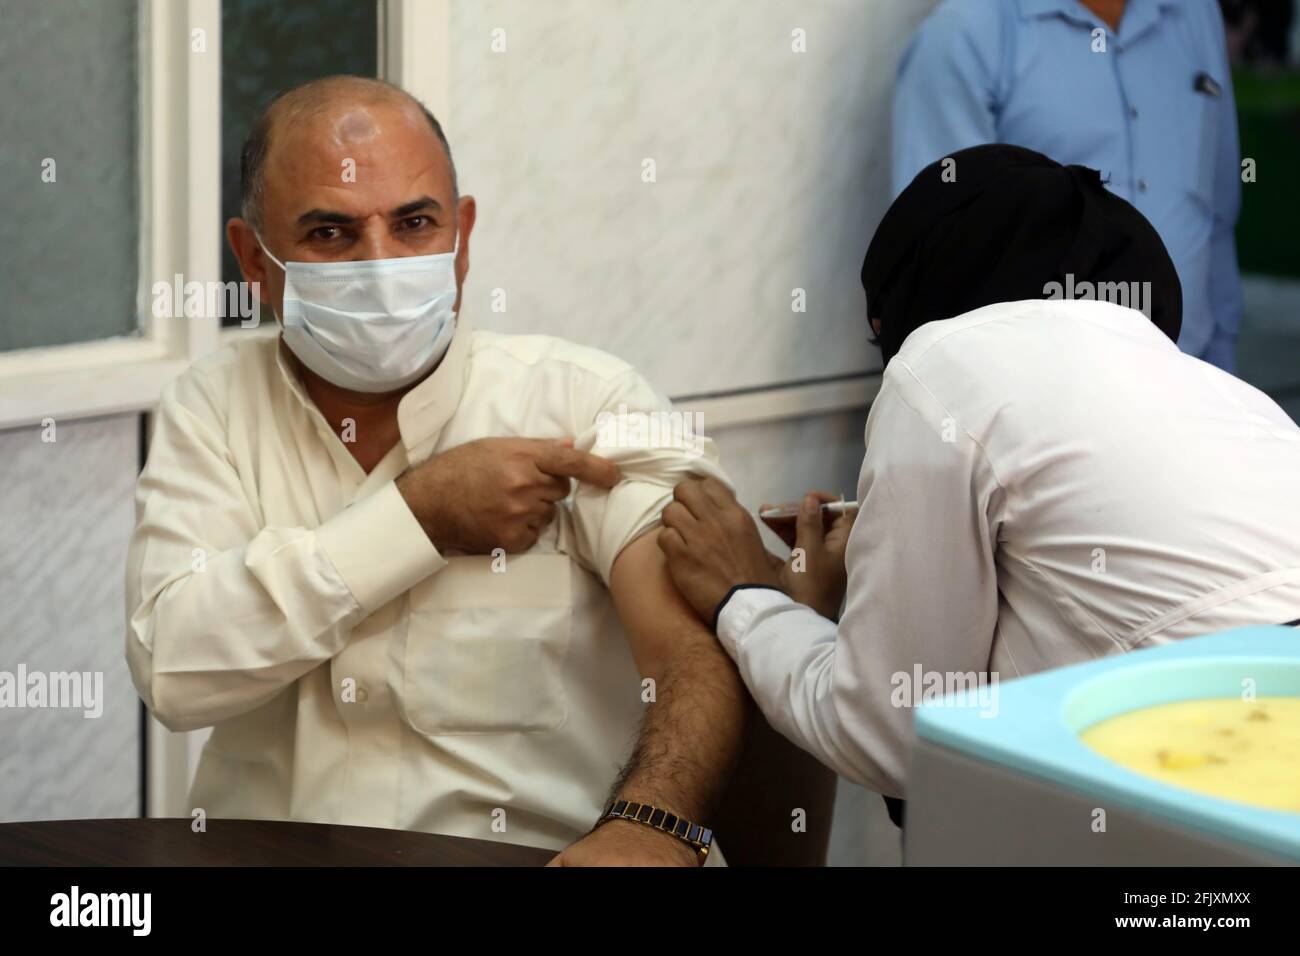 Taiz, Jemen. April 2021. Ein Mann erhält am 25. April 2021 in einem Krankenhaus in der Provinz Taiz, Jemen, eine Dosis des Impfstoffs COVID-19. Das Land treibt seine Impfkampagne gegen das Coronavirus voran. Quelle: Str/Xinhua/Alamy Live News Stockfoto